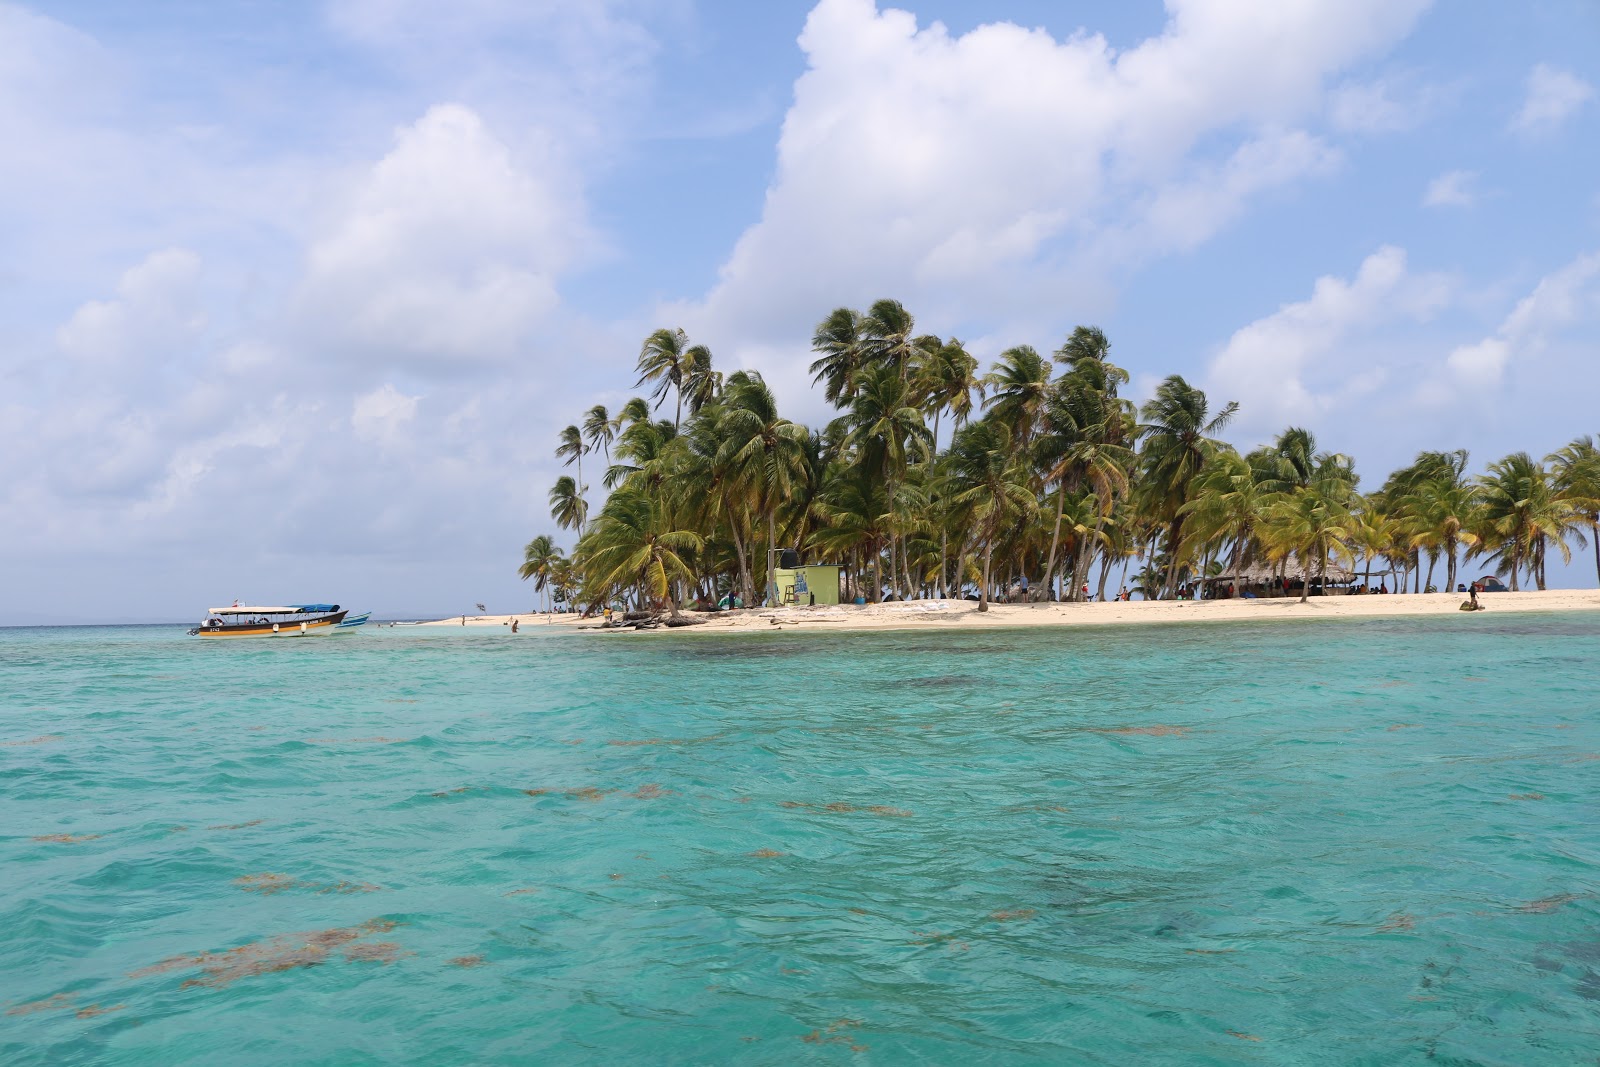 Fotografie cu Iguana island beach cu plajă spațioasă